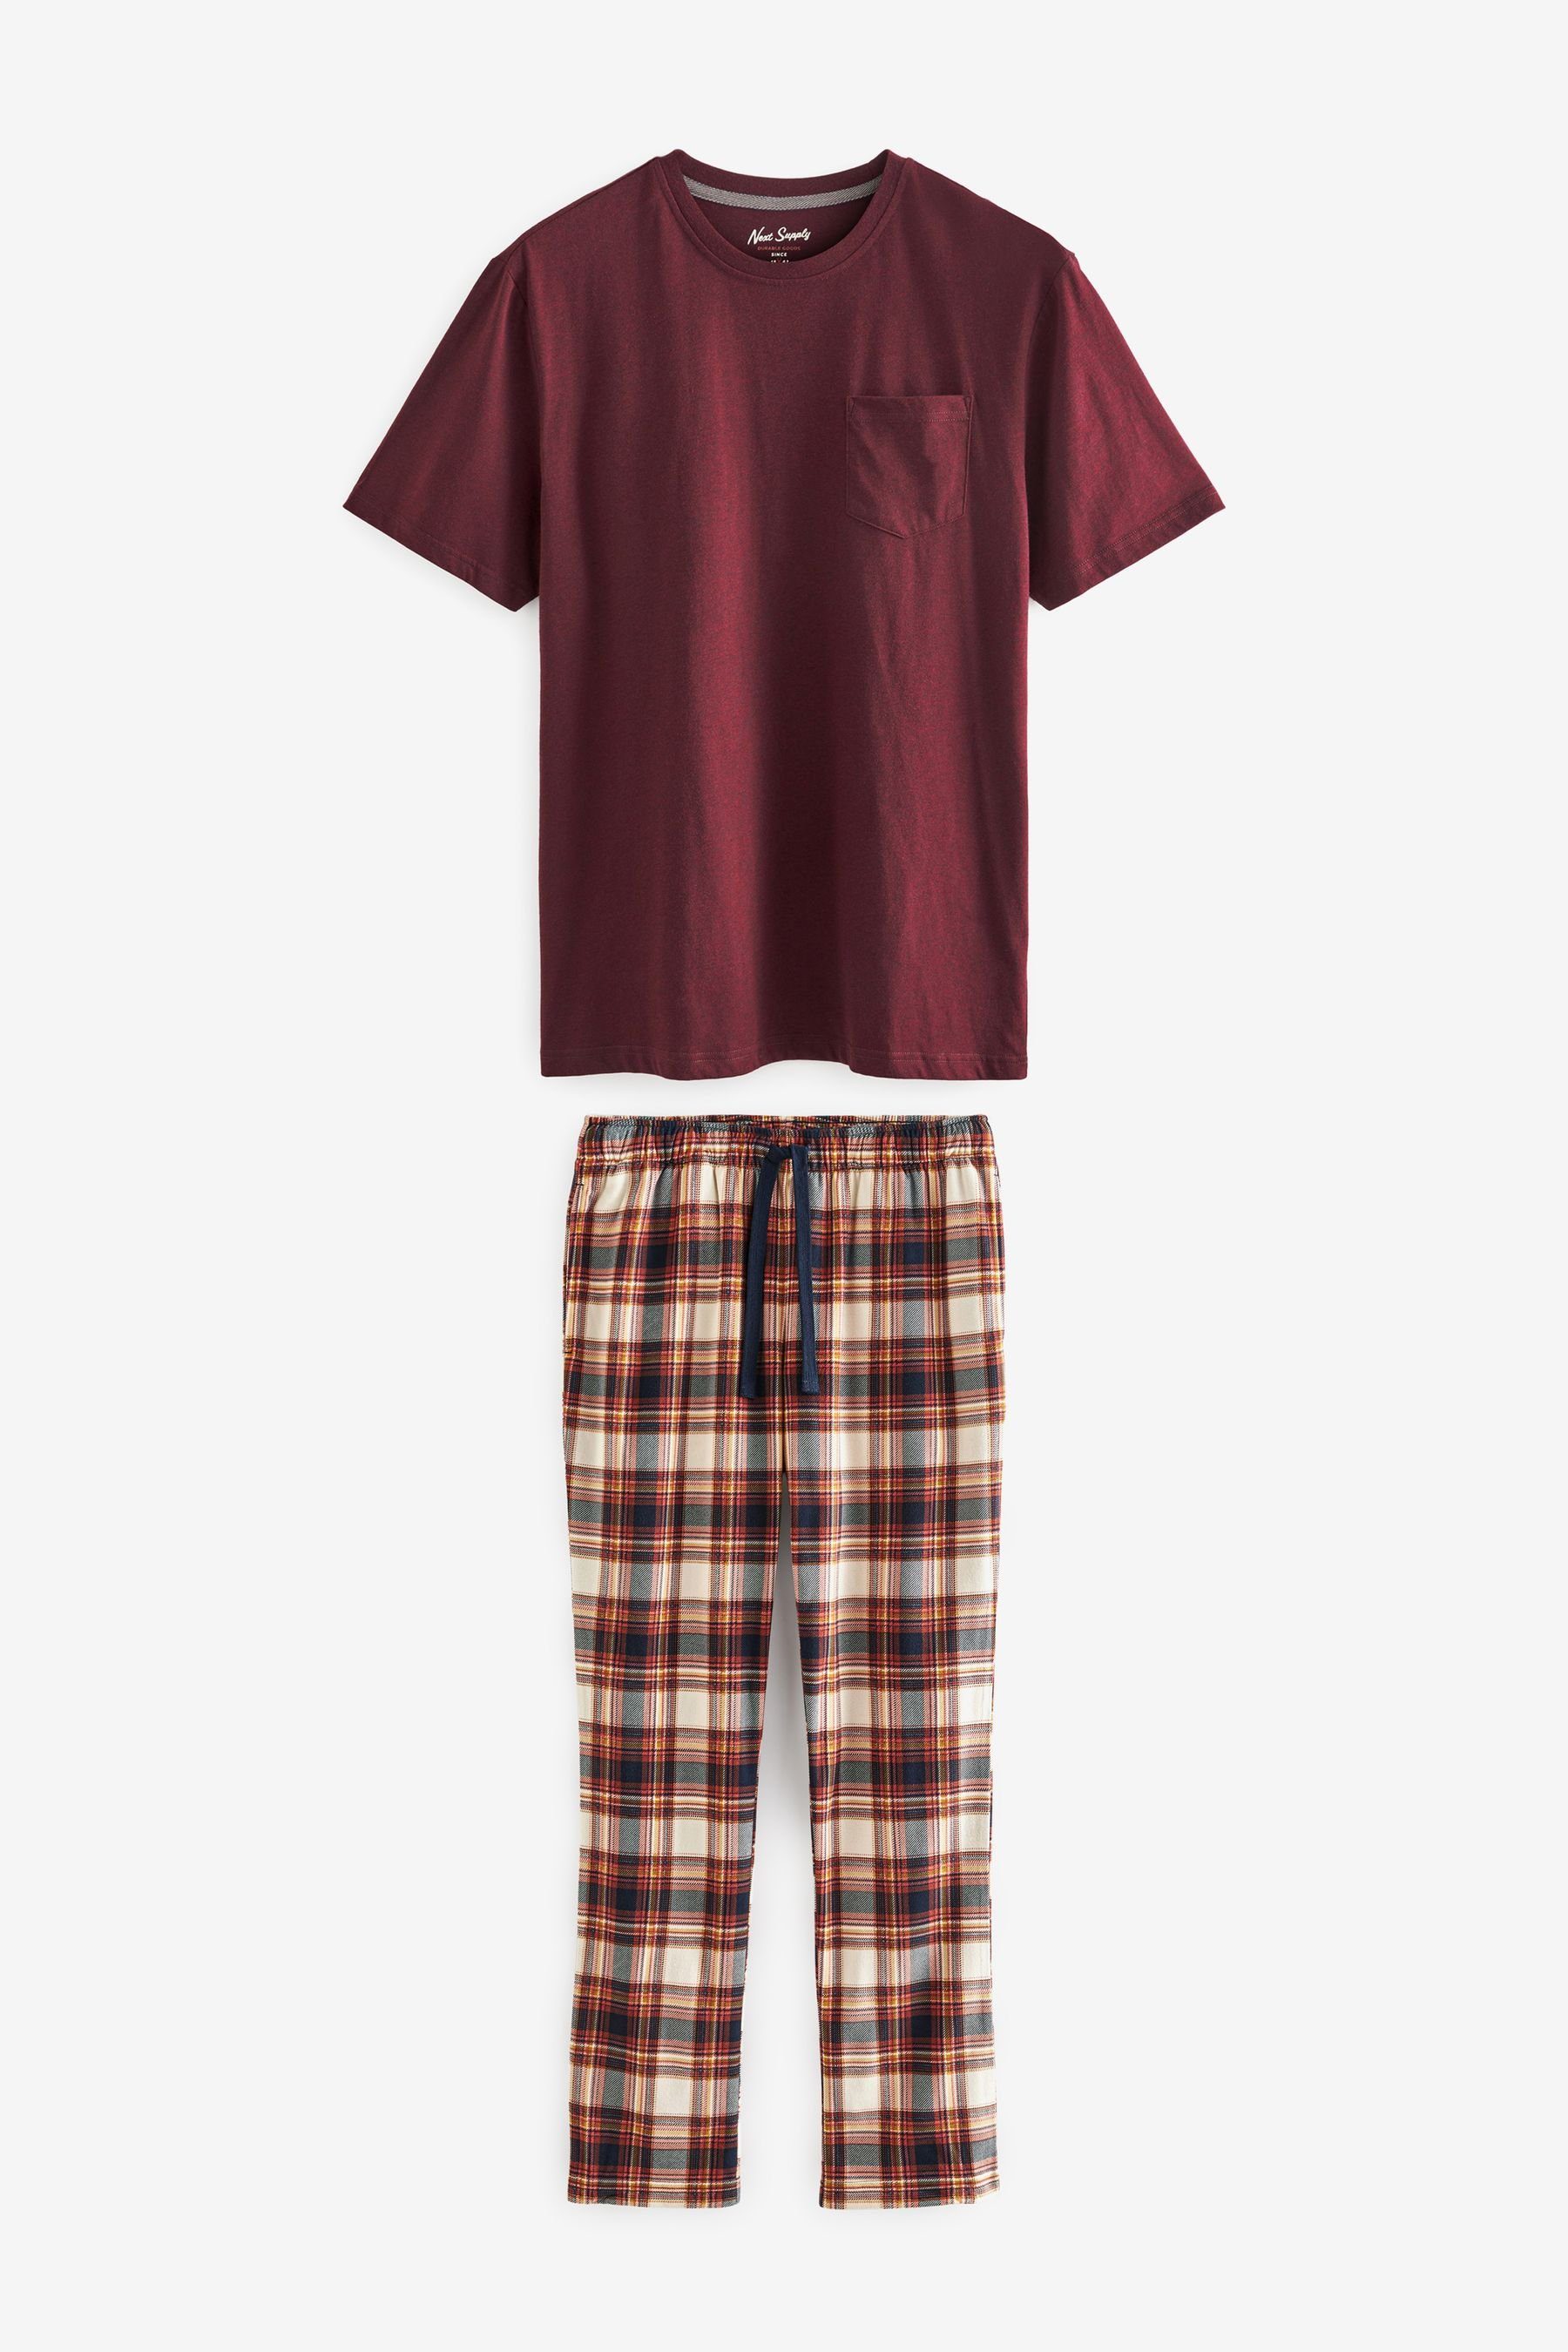 Motionflex (2 Bequemer tlg) Check Red/Natural Next Pyjama Schlafanzug